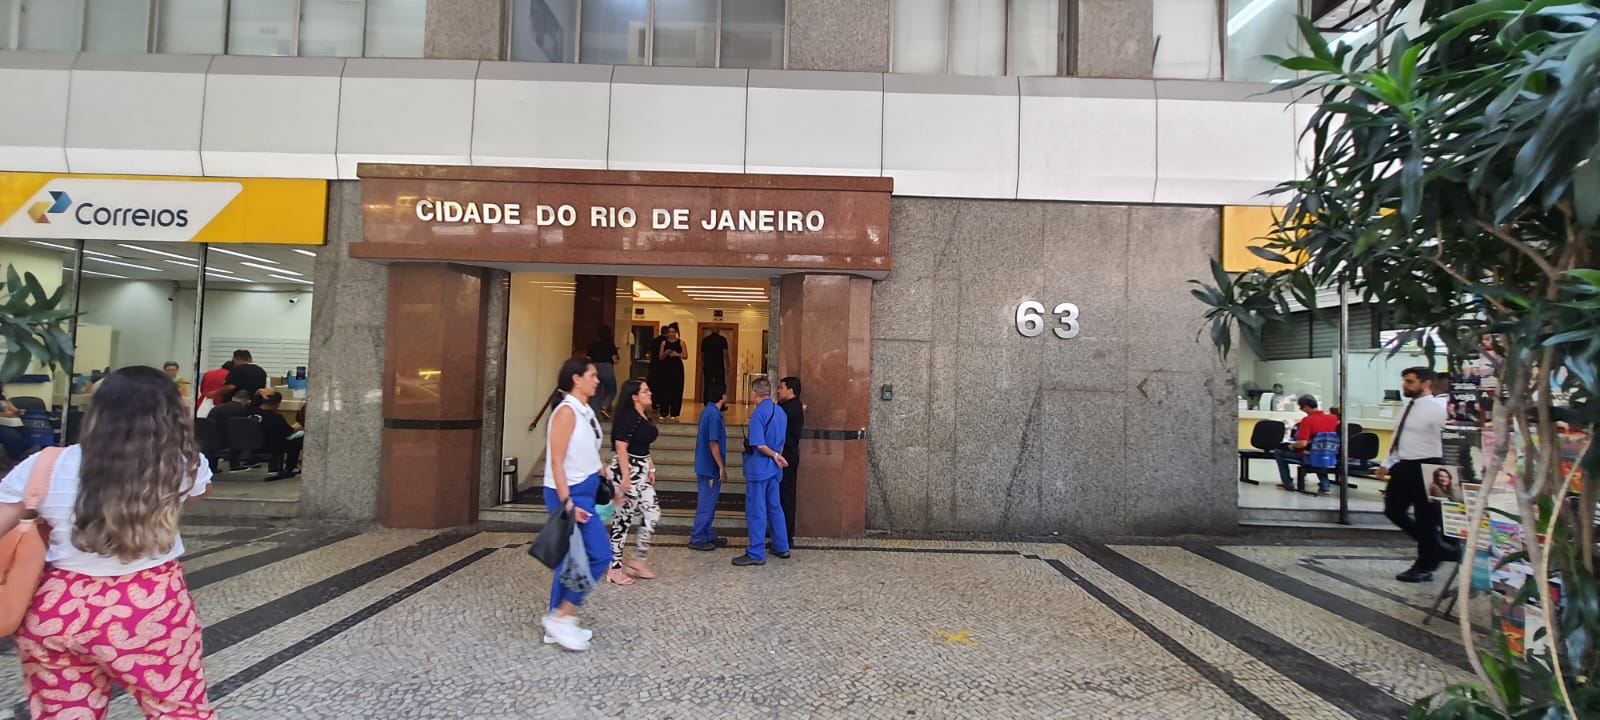 Sala comercial - Locação, Centro, Rio de Janeiro, RJ